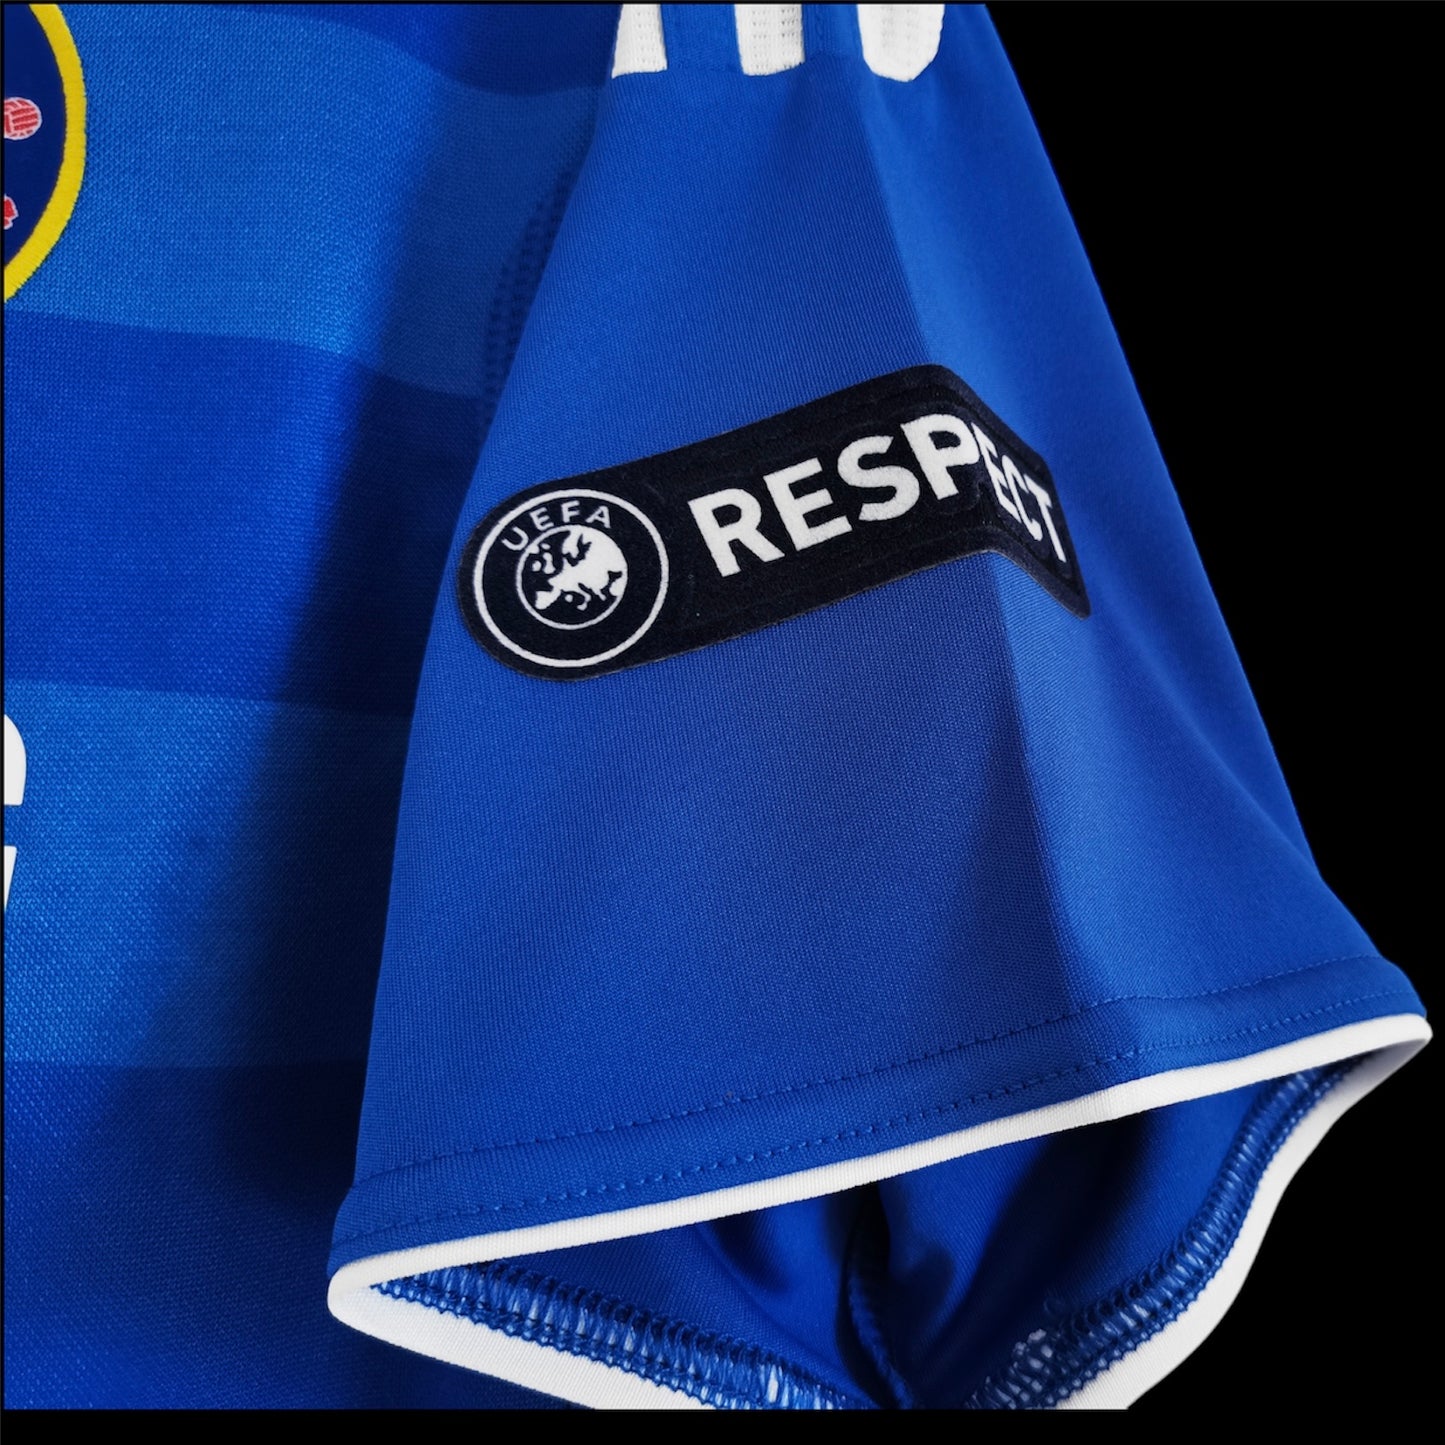 Chelsea Home 11-12 Champions League Retro Jersey Premium Replica 